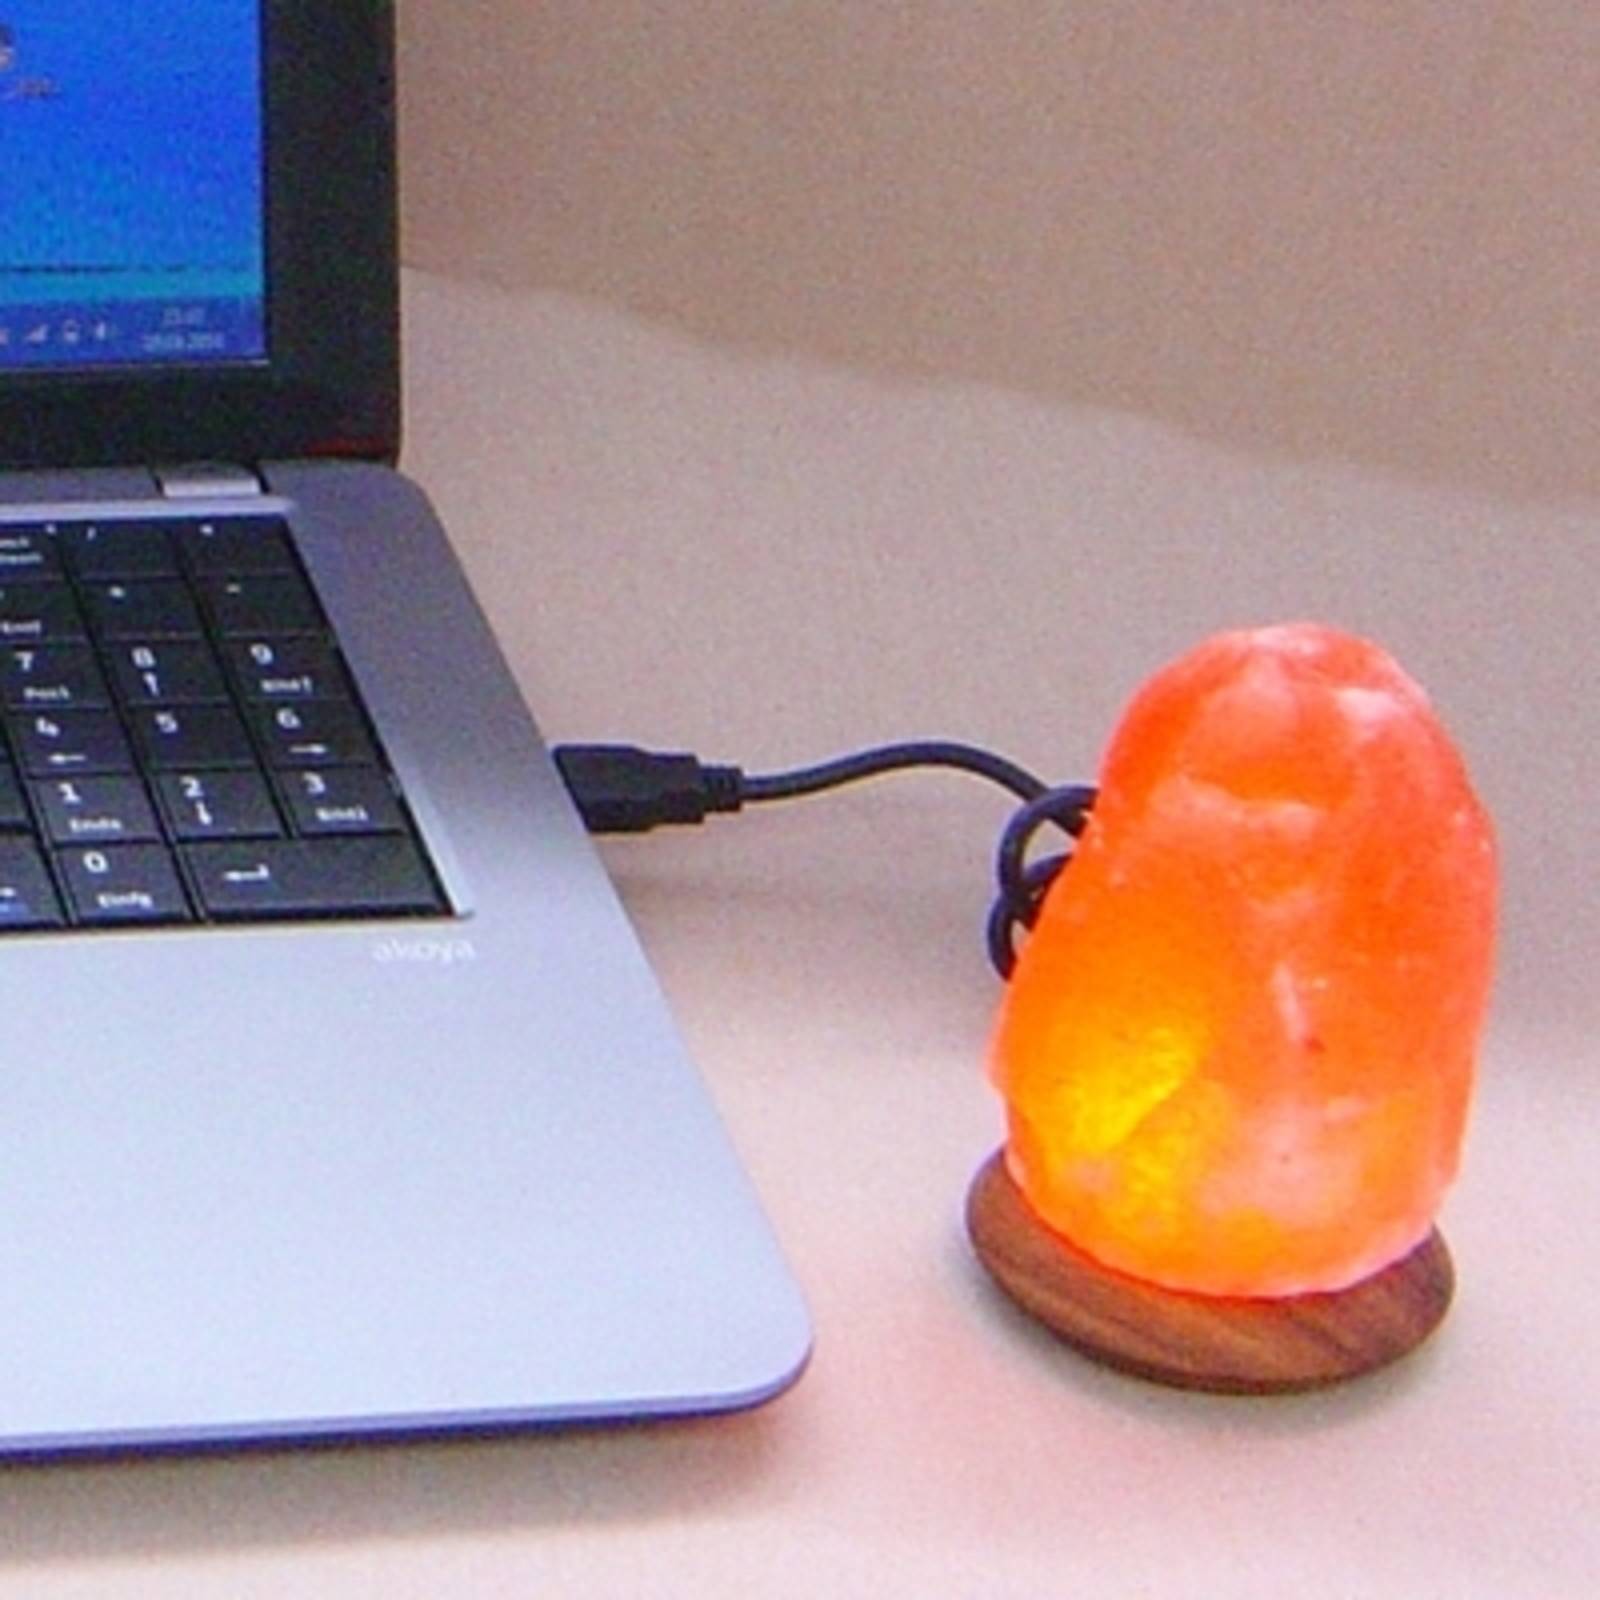 Wagner Life LED solná lampa Compus s USB pro počítač, notebook